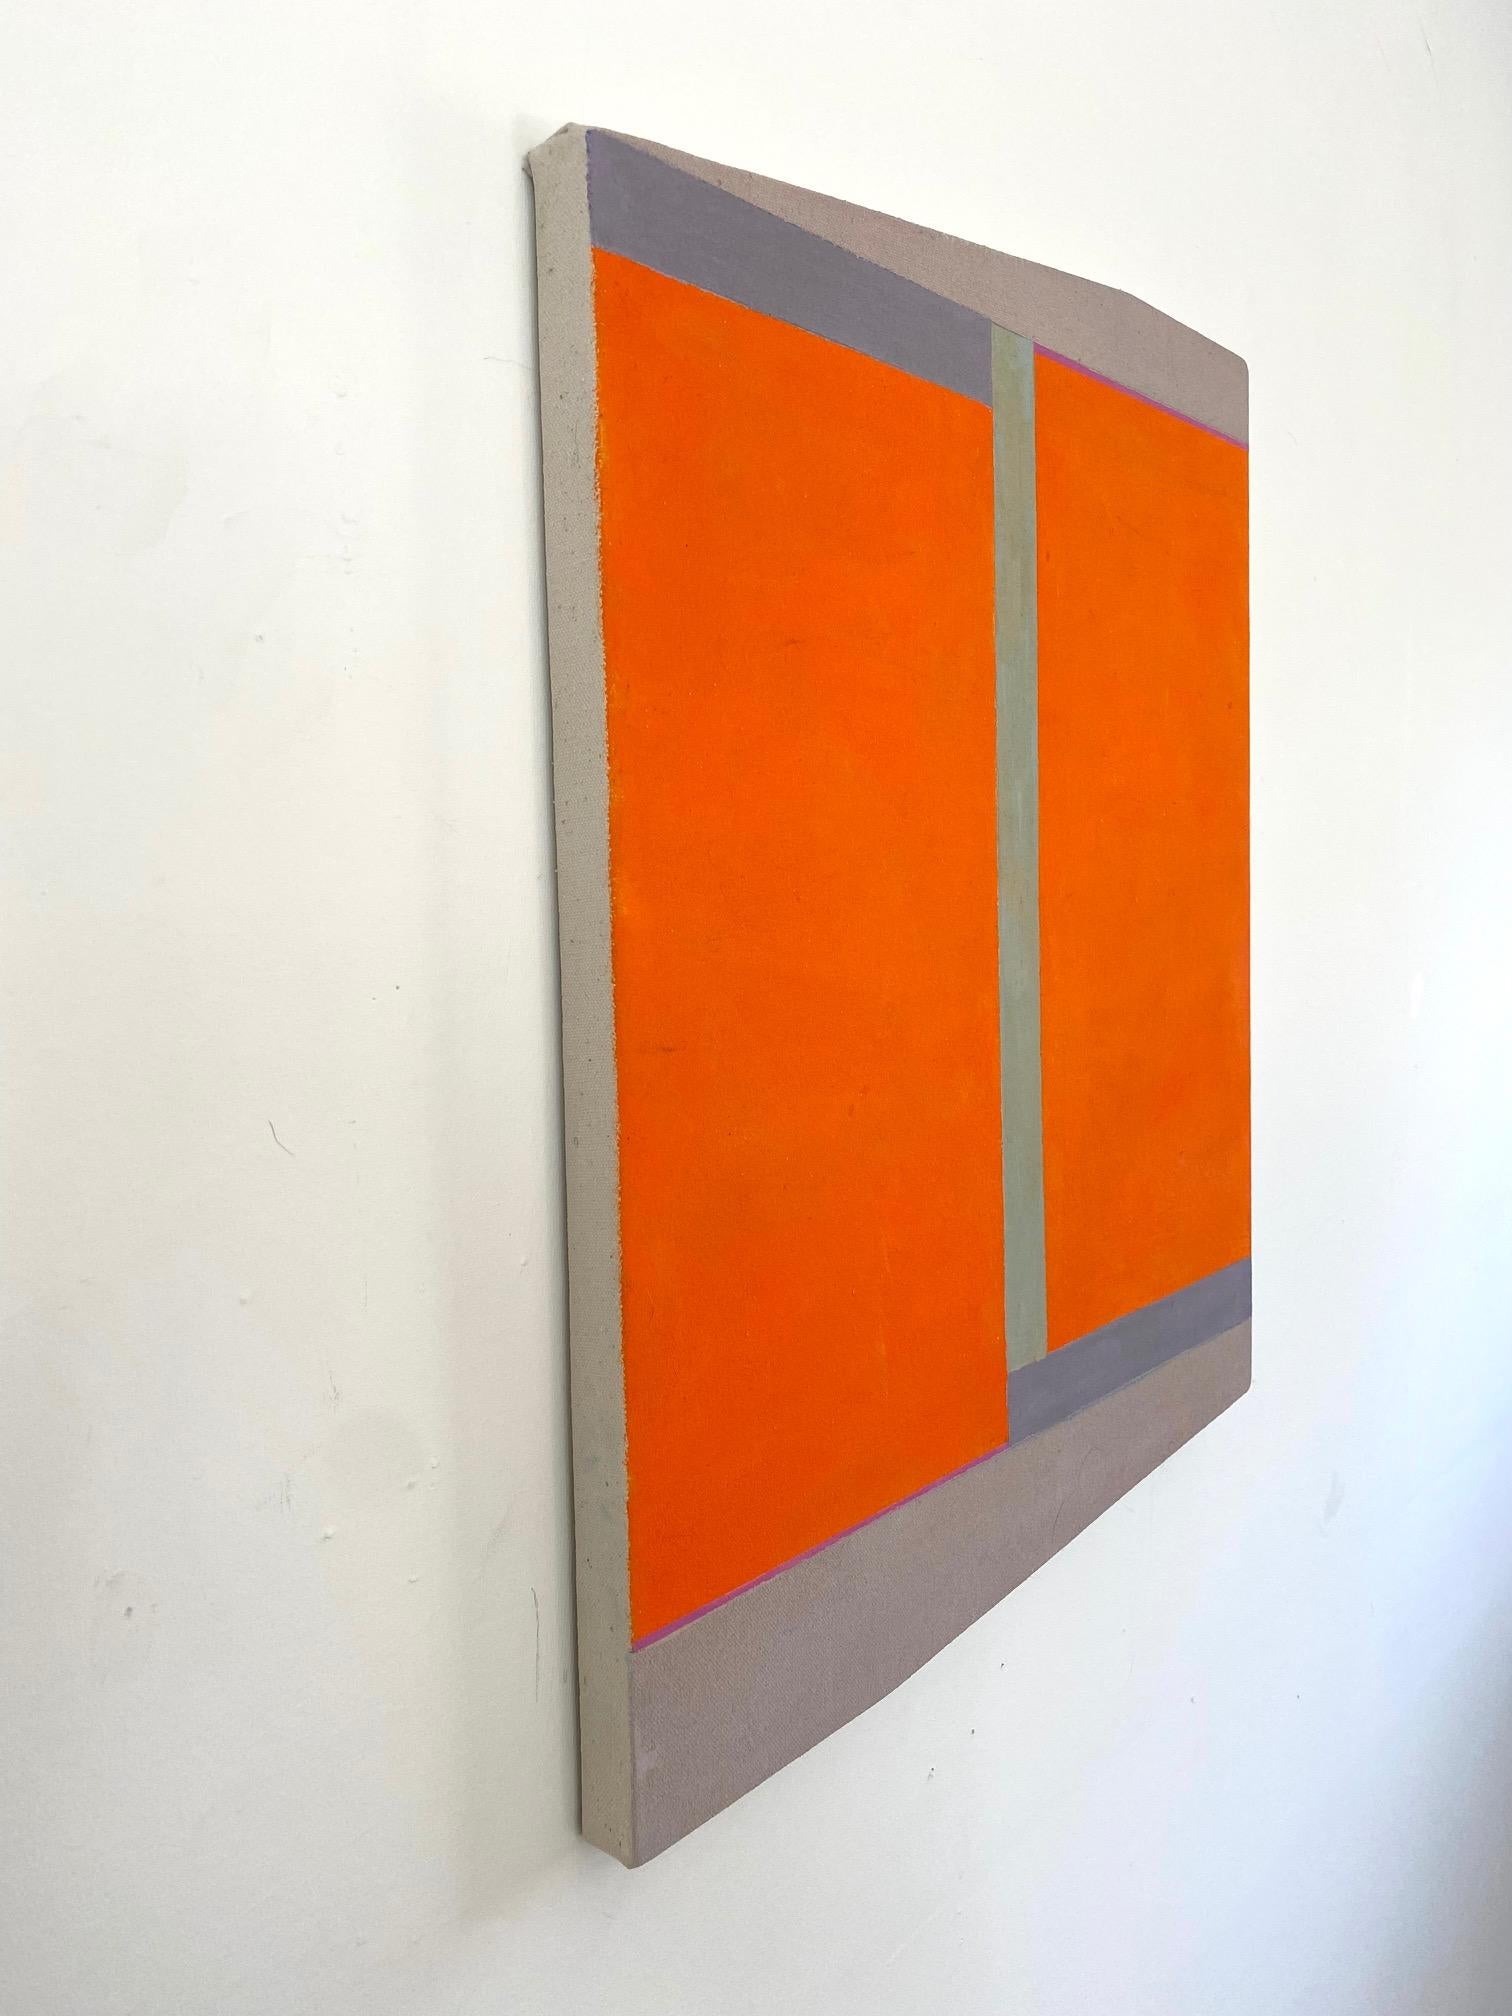 D30 (Abstrakte Malerei)

Acryl auf Leinwand, montiert auf einer geformten Platte - ungerahmt

Elizabeth Gourlay ist eine amerikanische abstrakte Künstlerin, deren Werke aus einem fortschreitenden Prozess der Überlagerung von Farben, Linien und